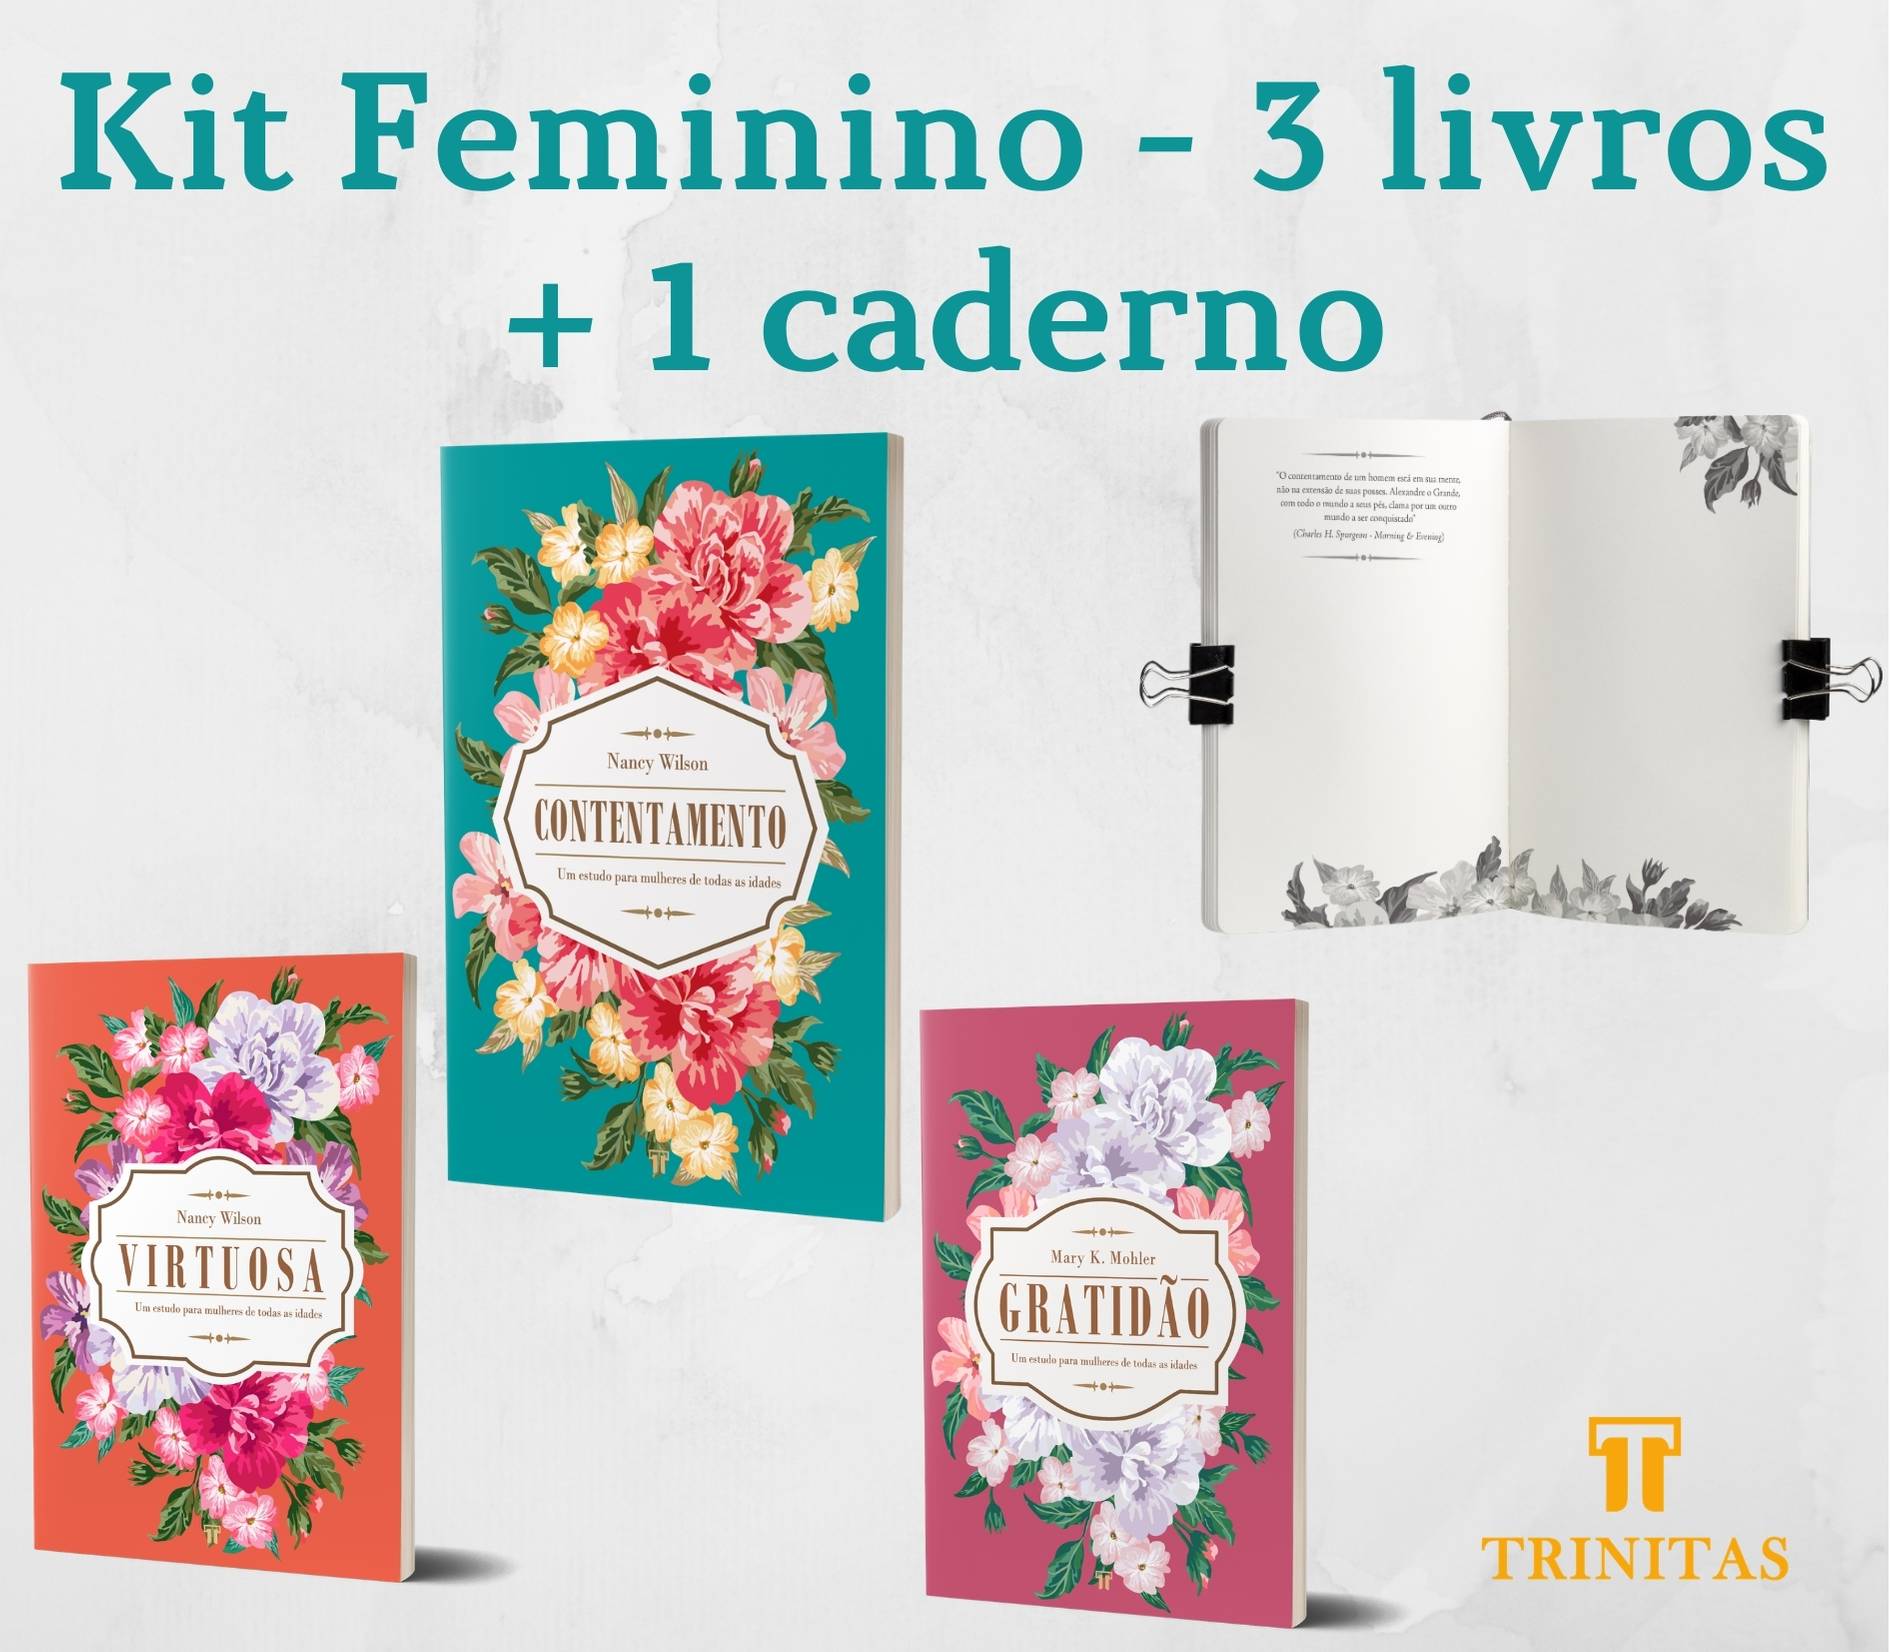 Kit Feminino - 3 livros + caderno de anotações